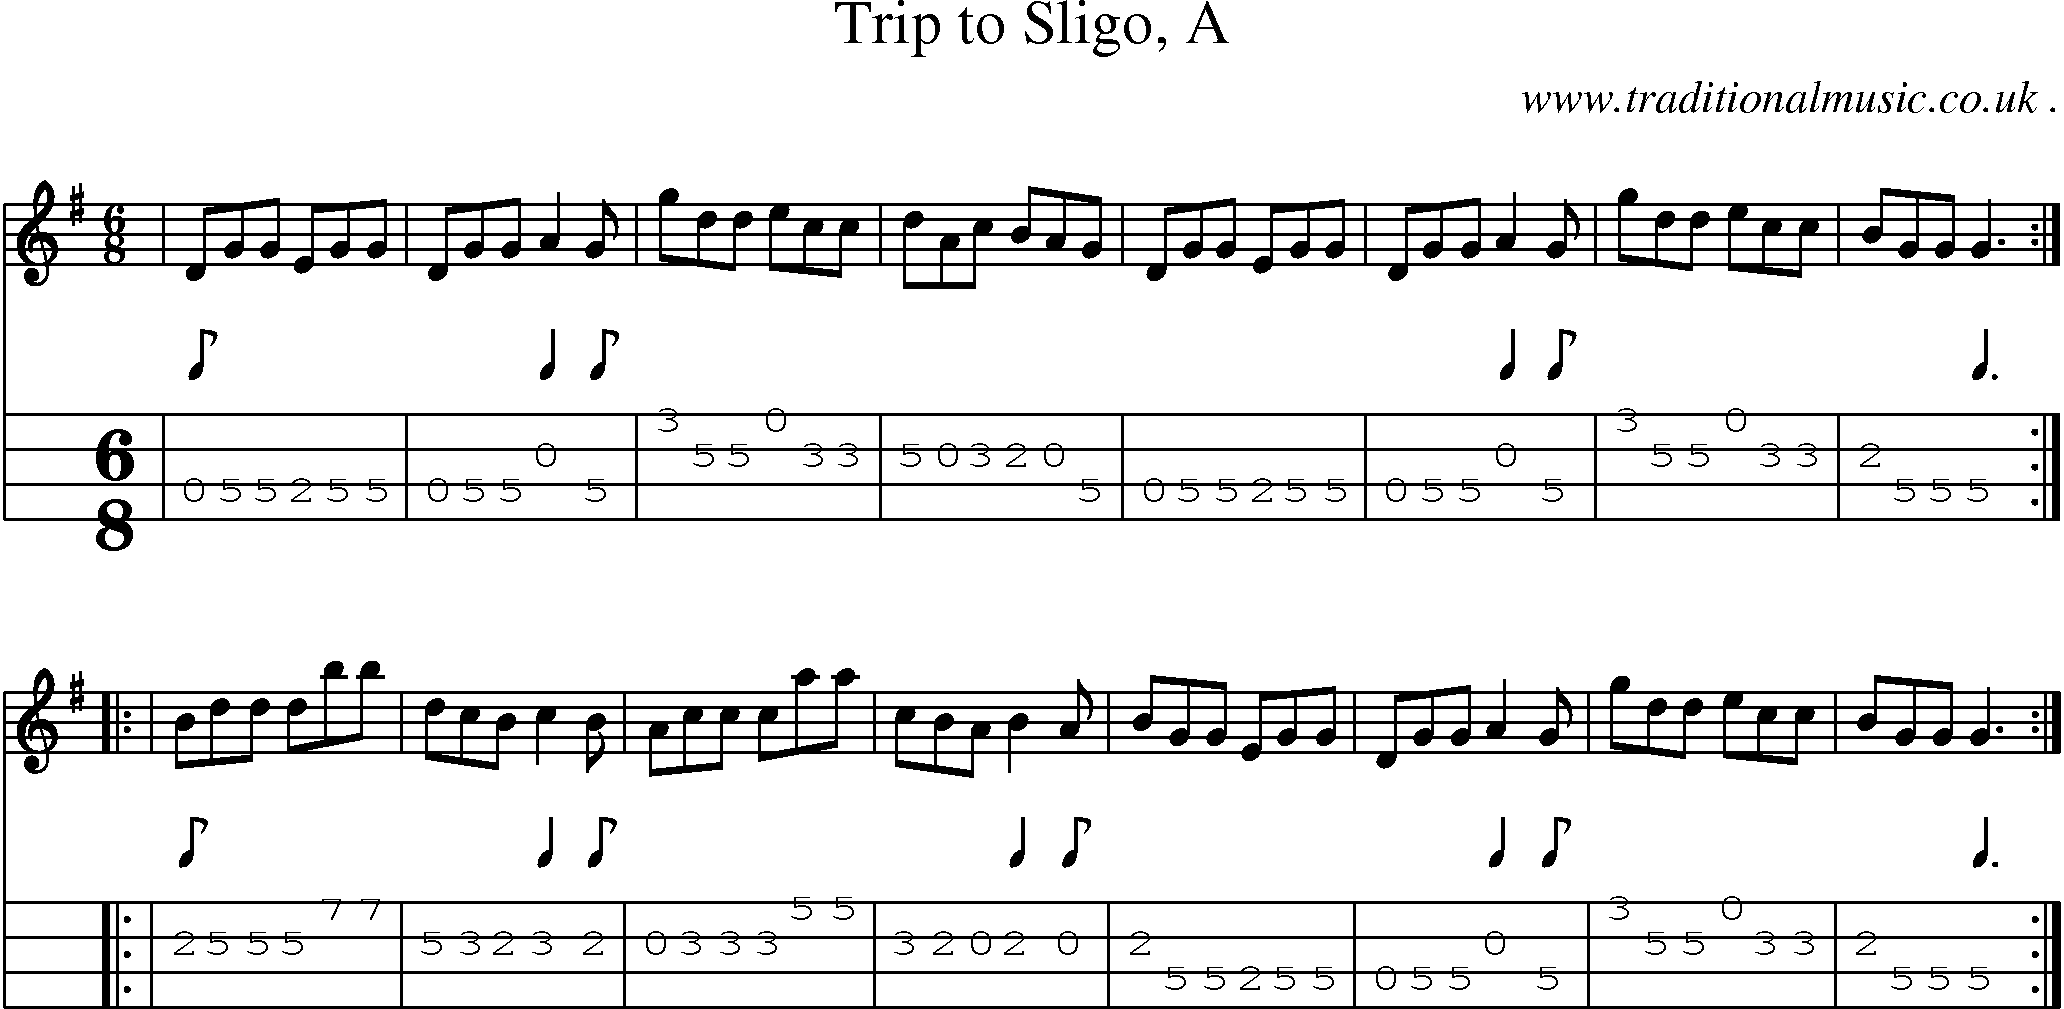 Sheet-music  score, Chords and Mandolin Tabs for Trip To Sligo A